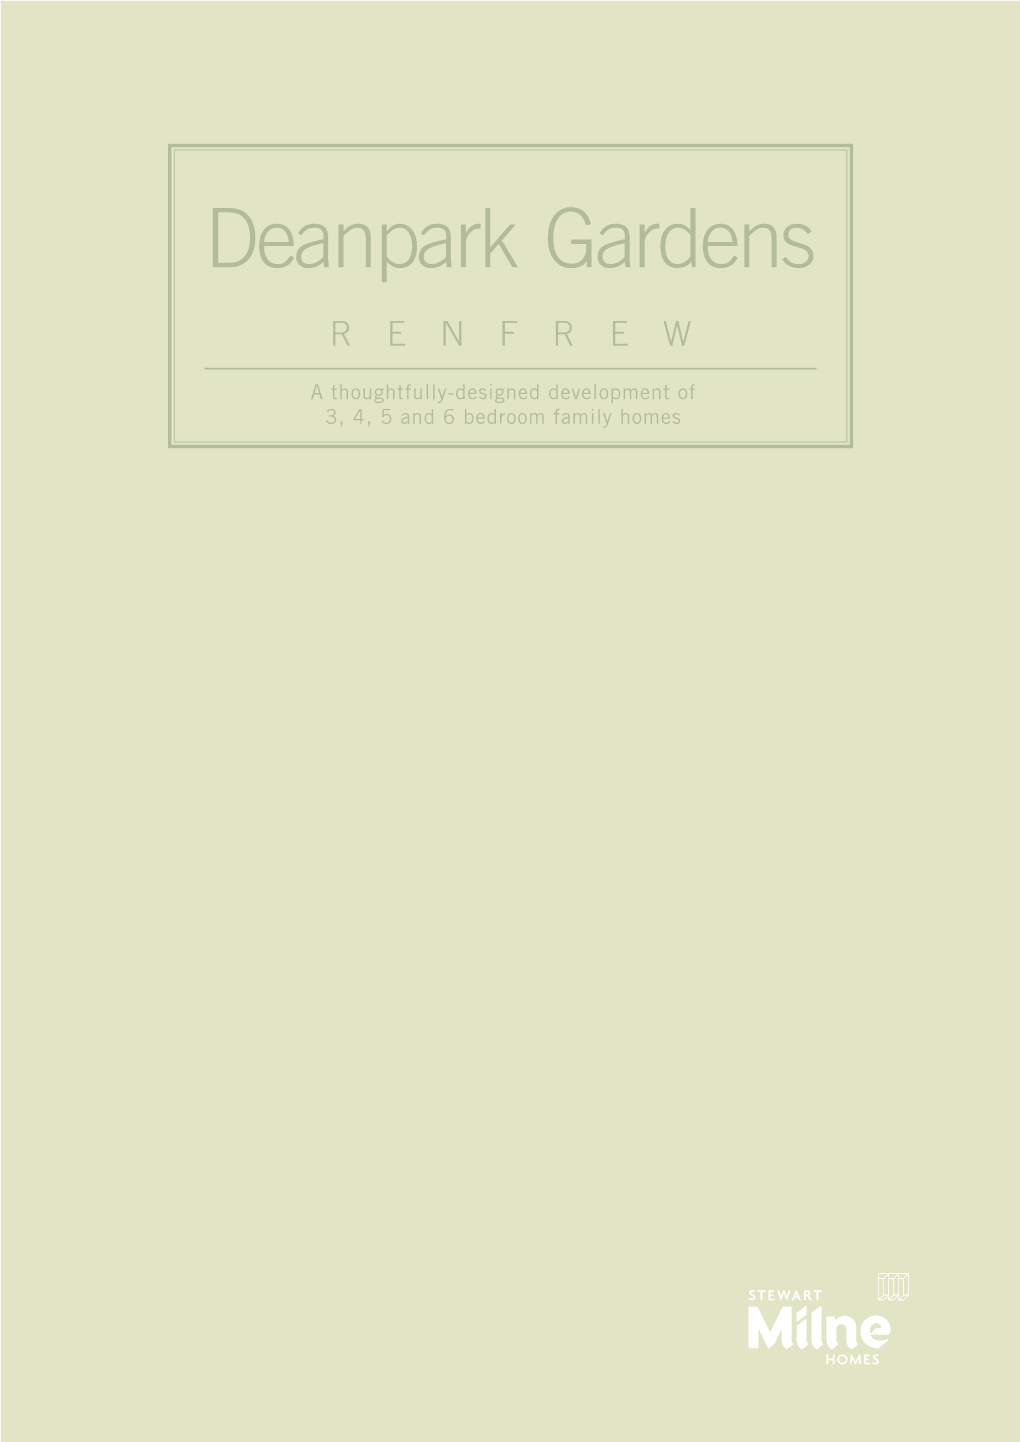 Deanpark Gardens RENFREW